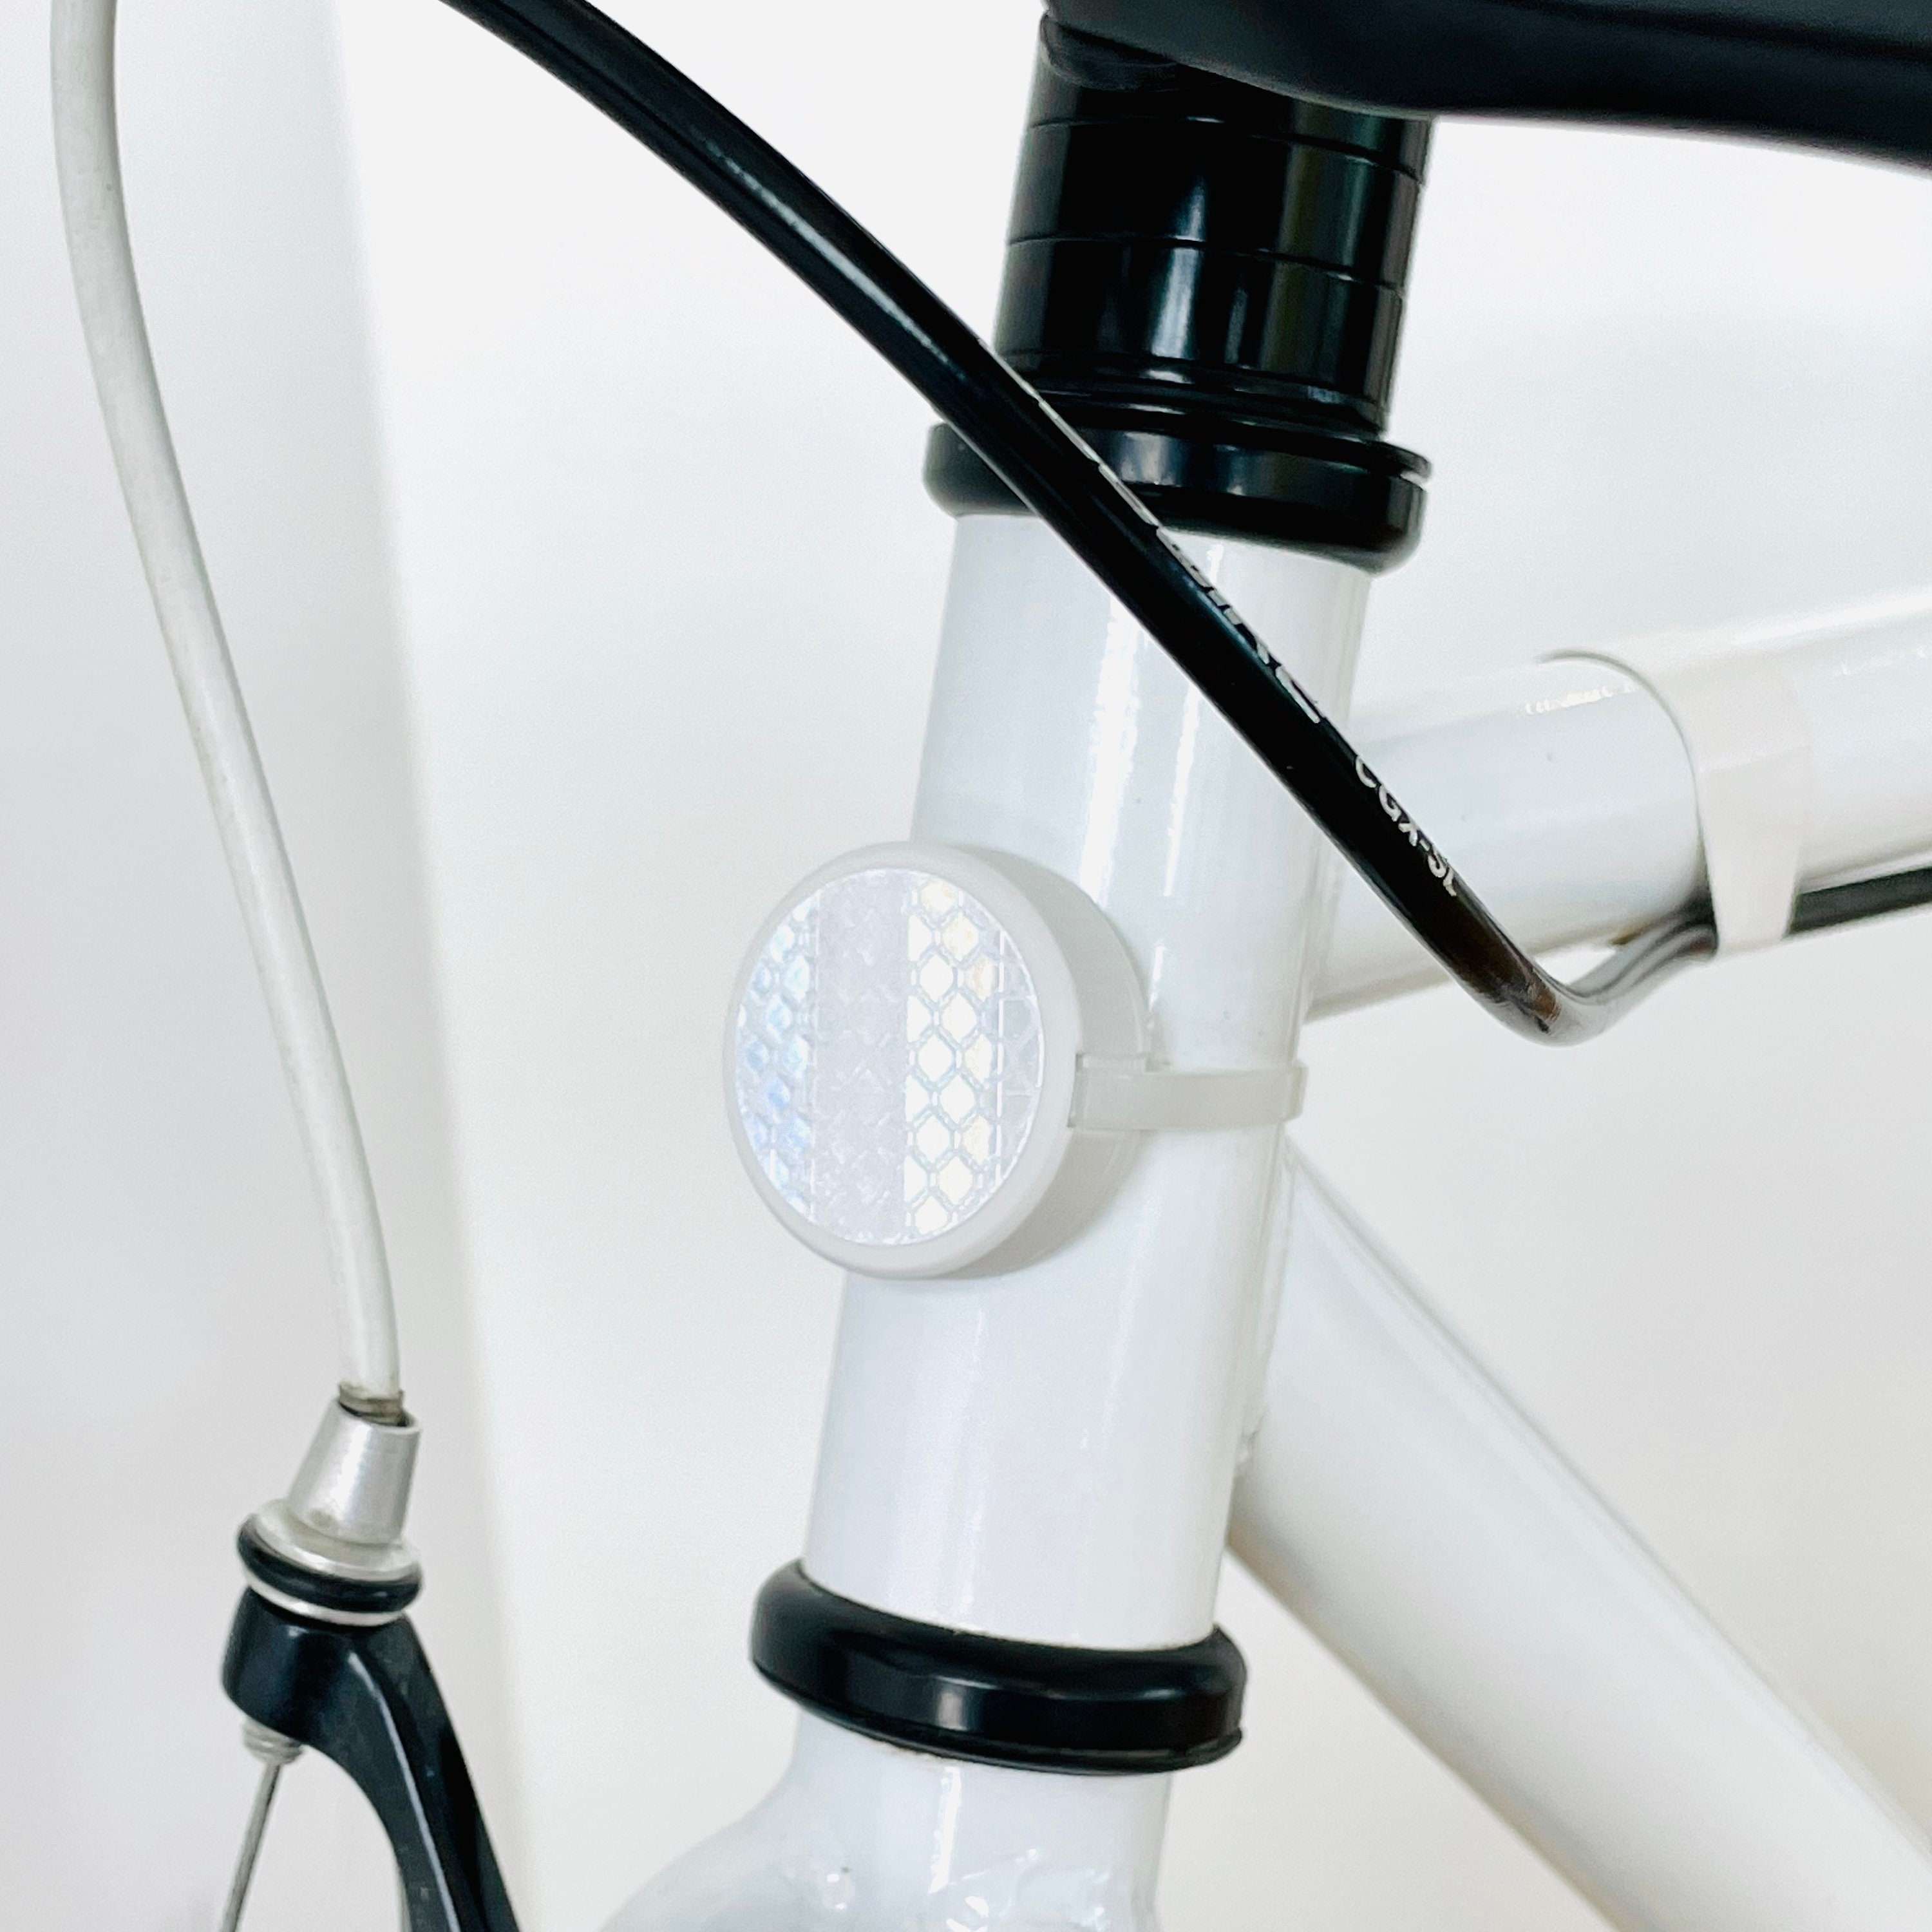 Monture réflecteur de vélo Apple AirTag - design original, garantie à vie